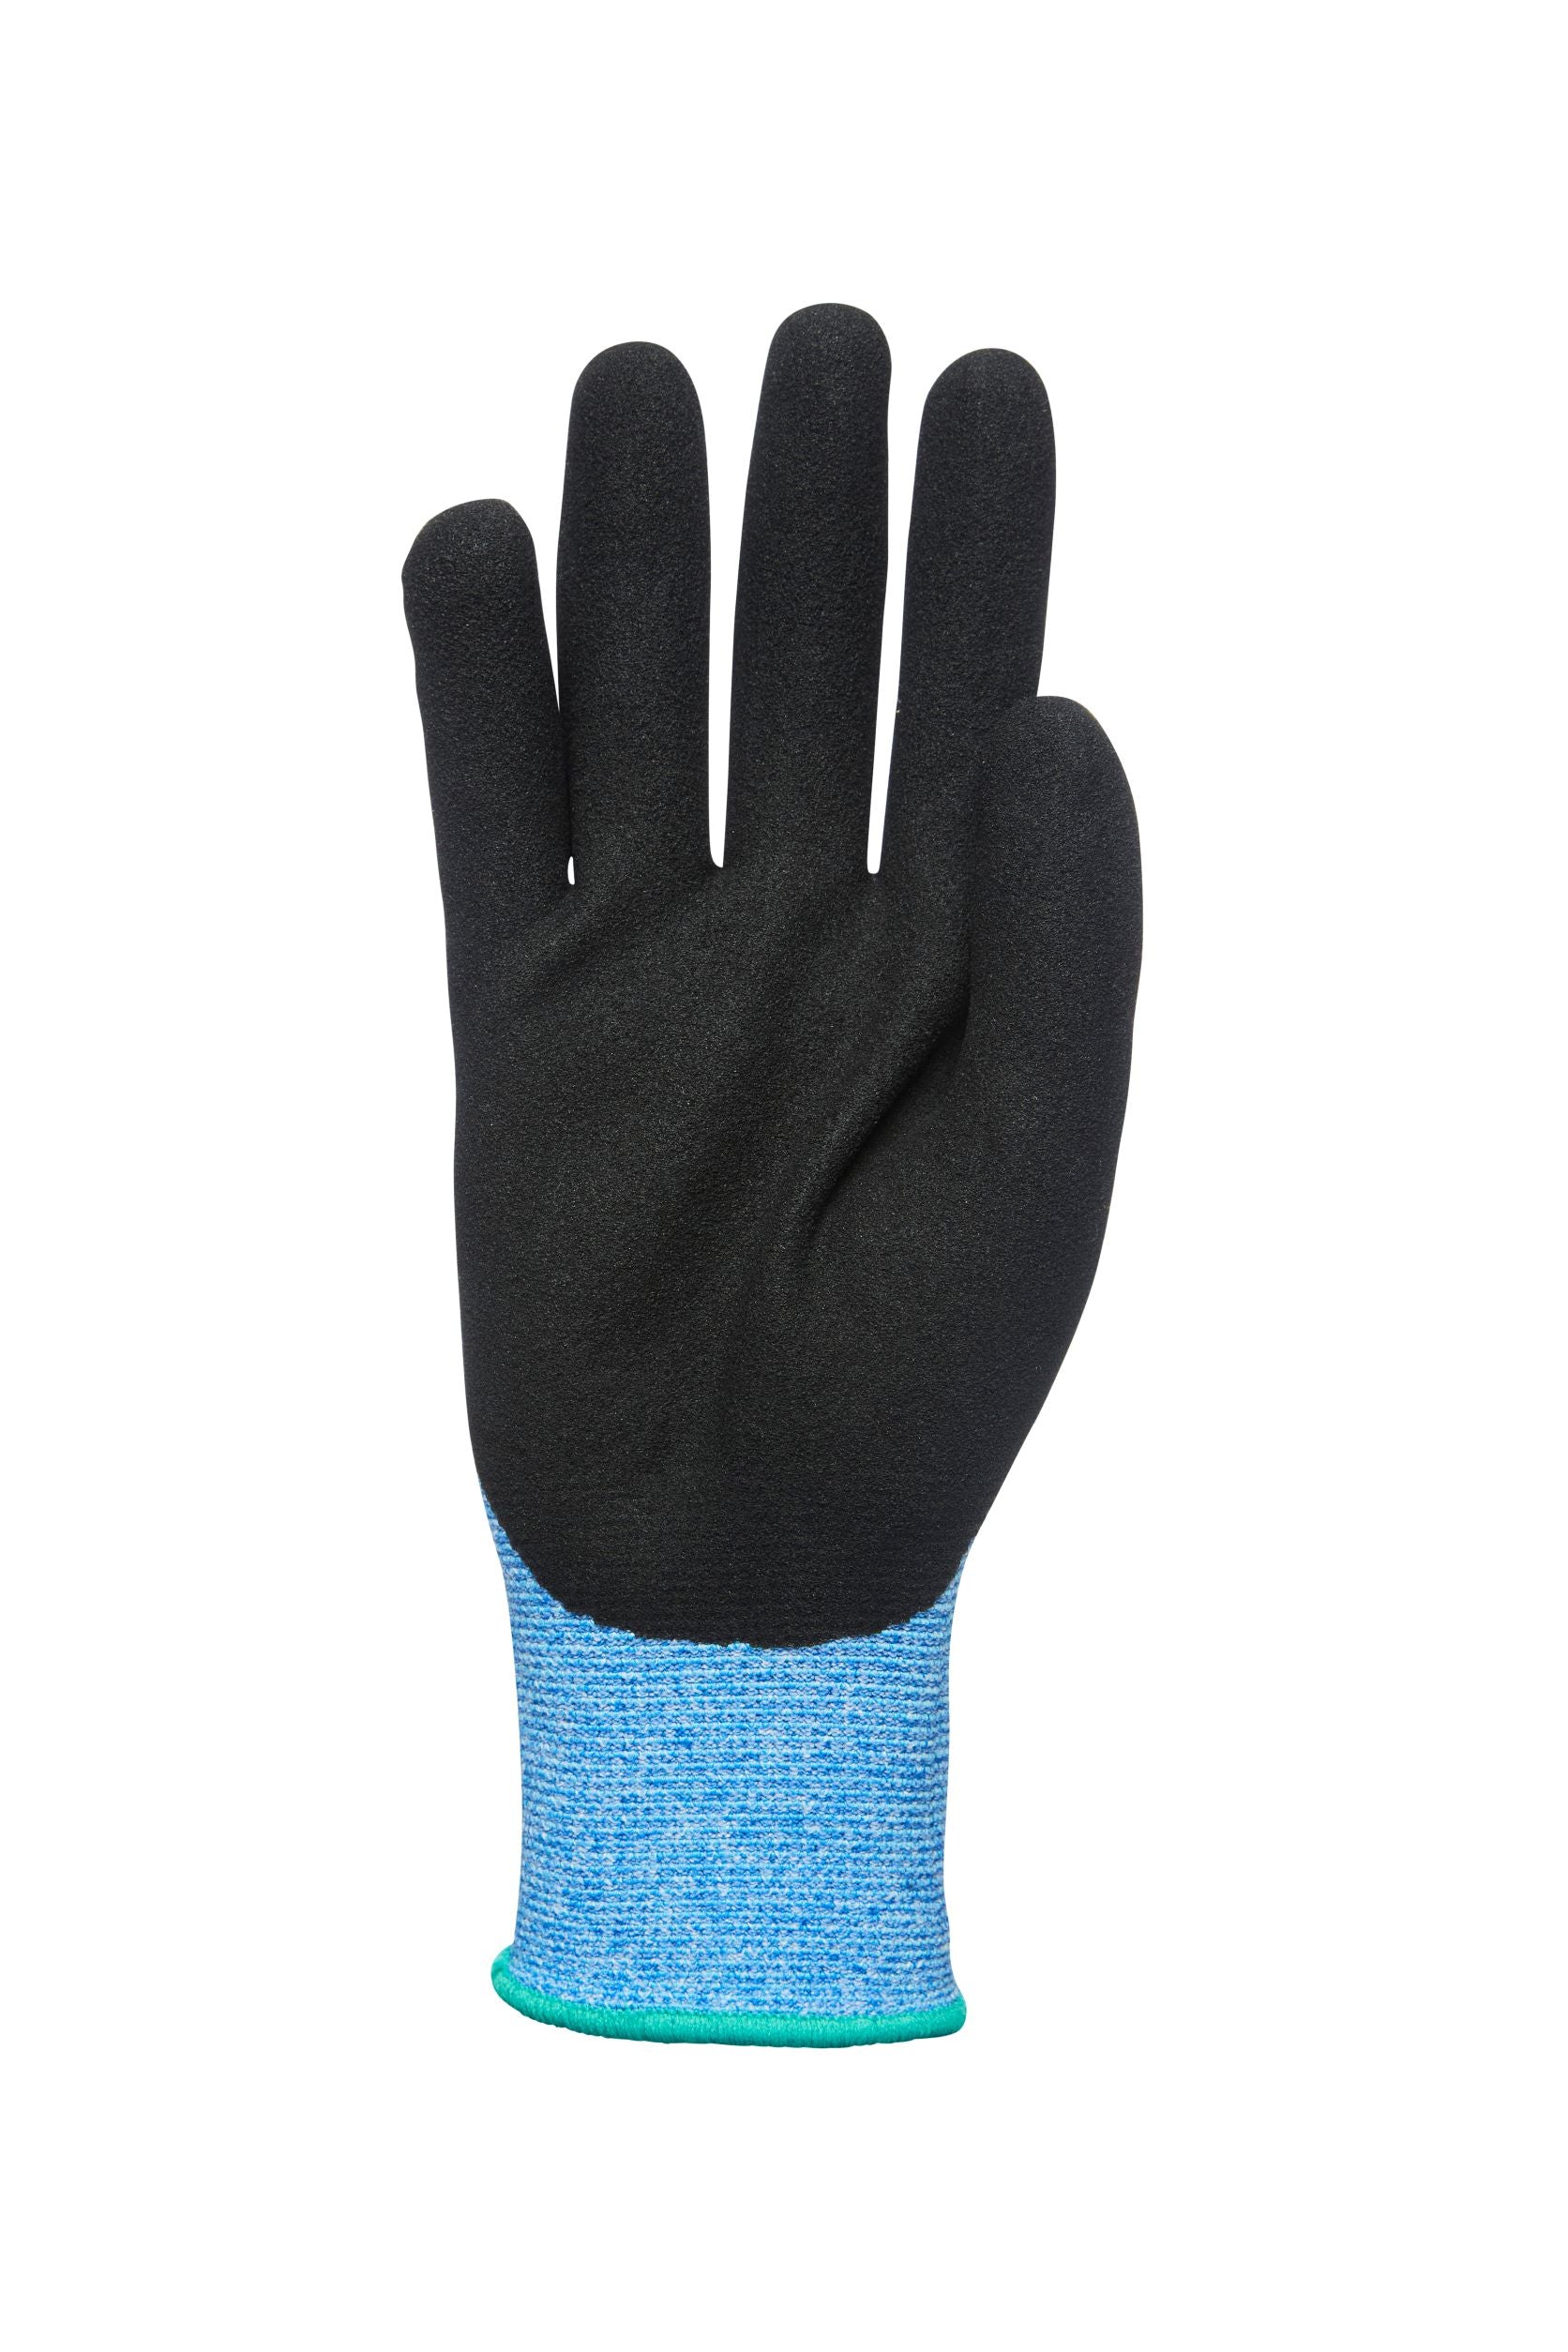 Polyco Polyflex Eco N Foam Nitrile Gloves Per Pair